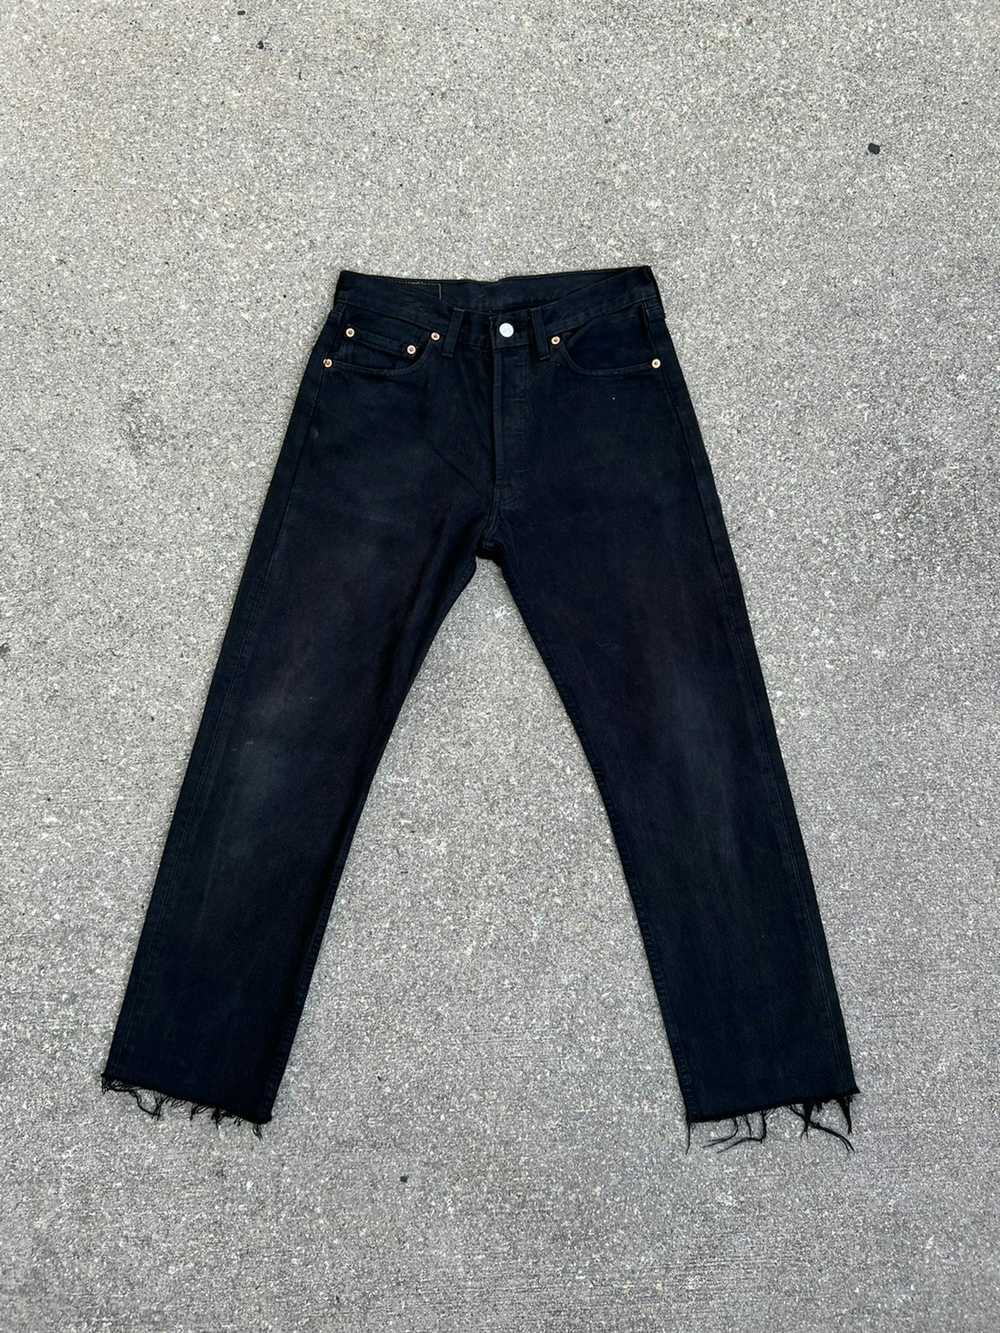 Levi's × Vintage Vintage 1998 Levi’s 501 Jeans Fa… - image 1